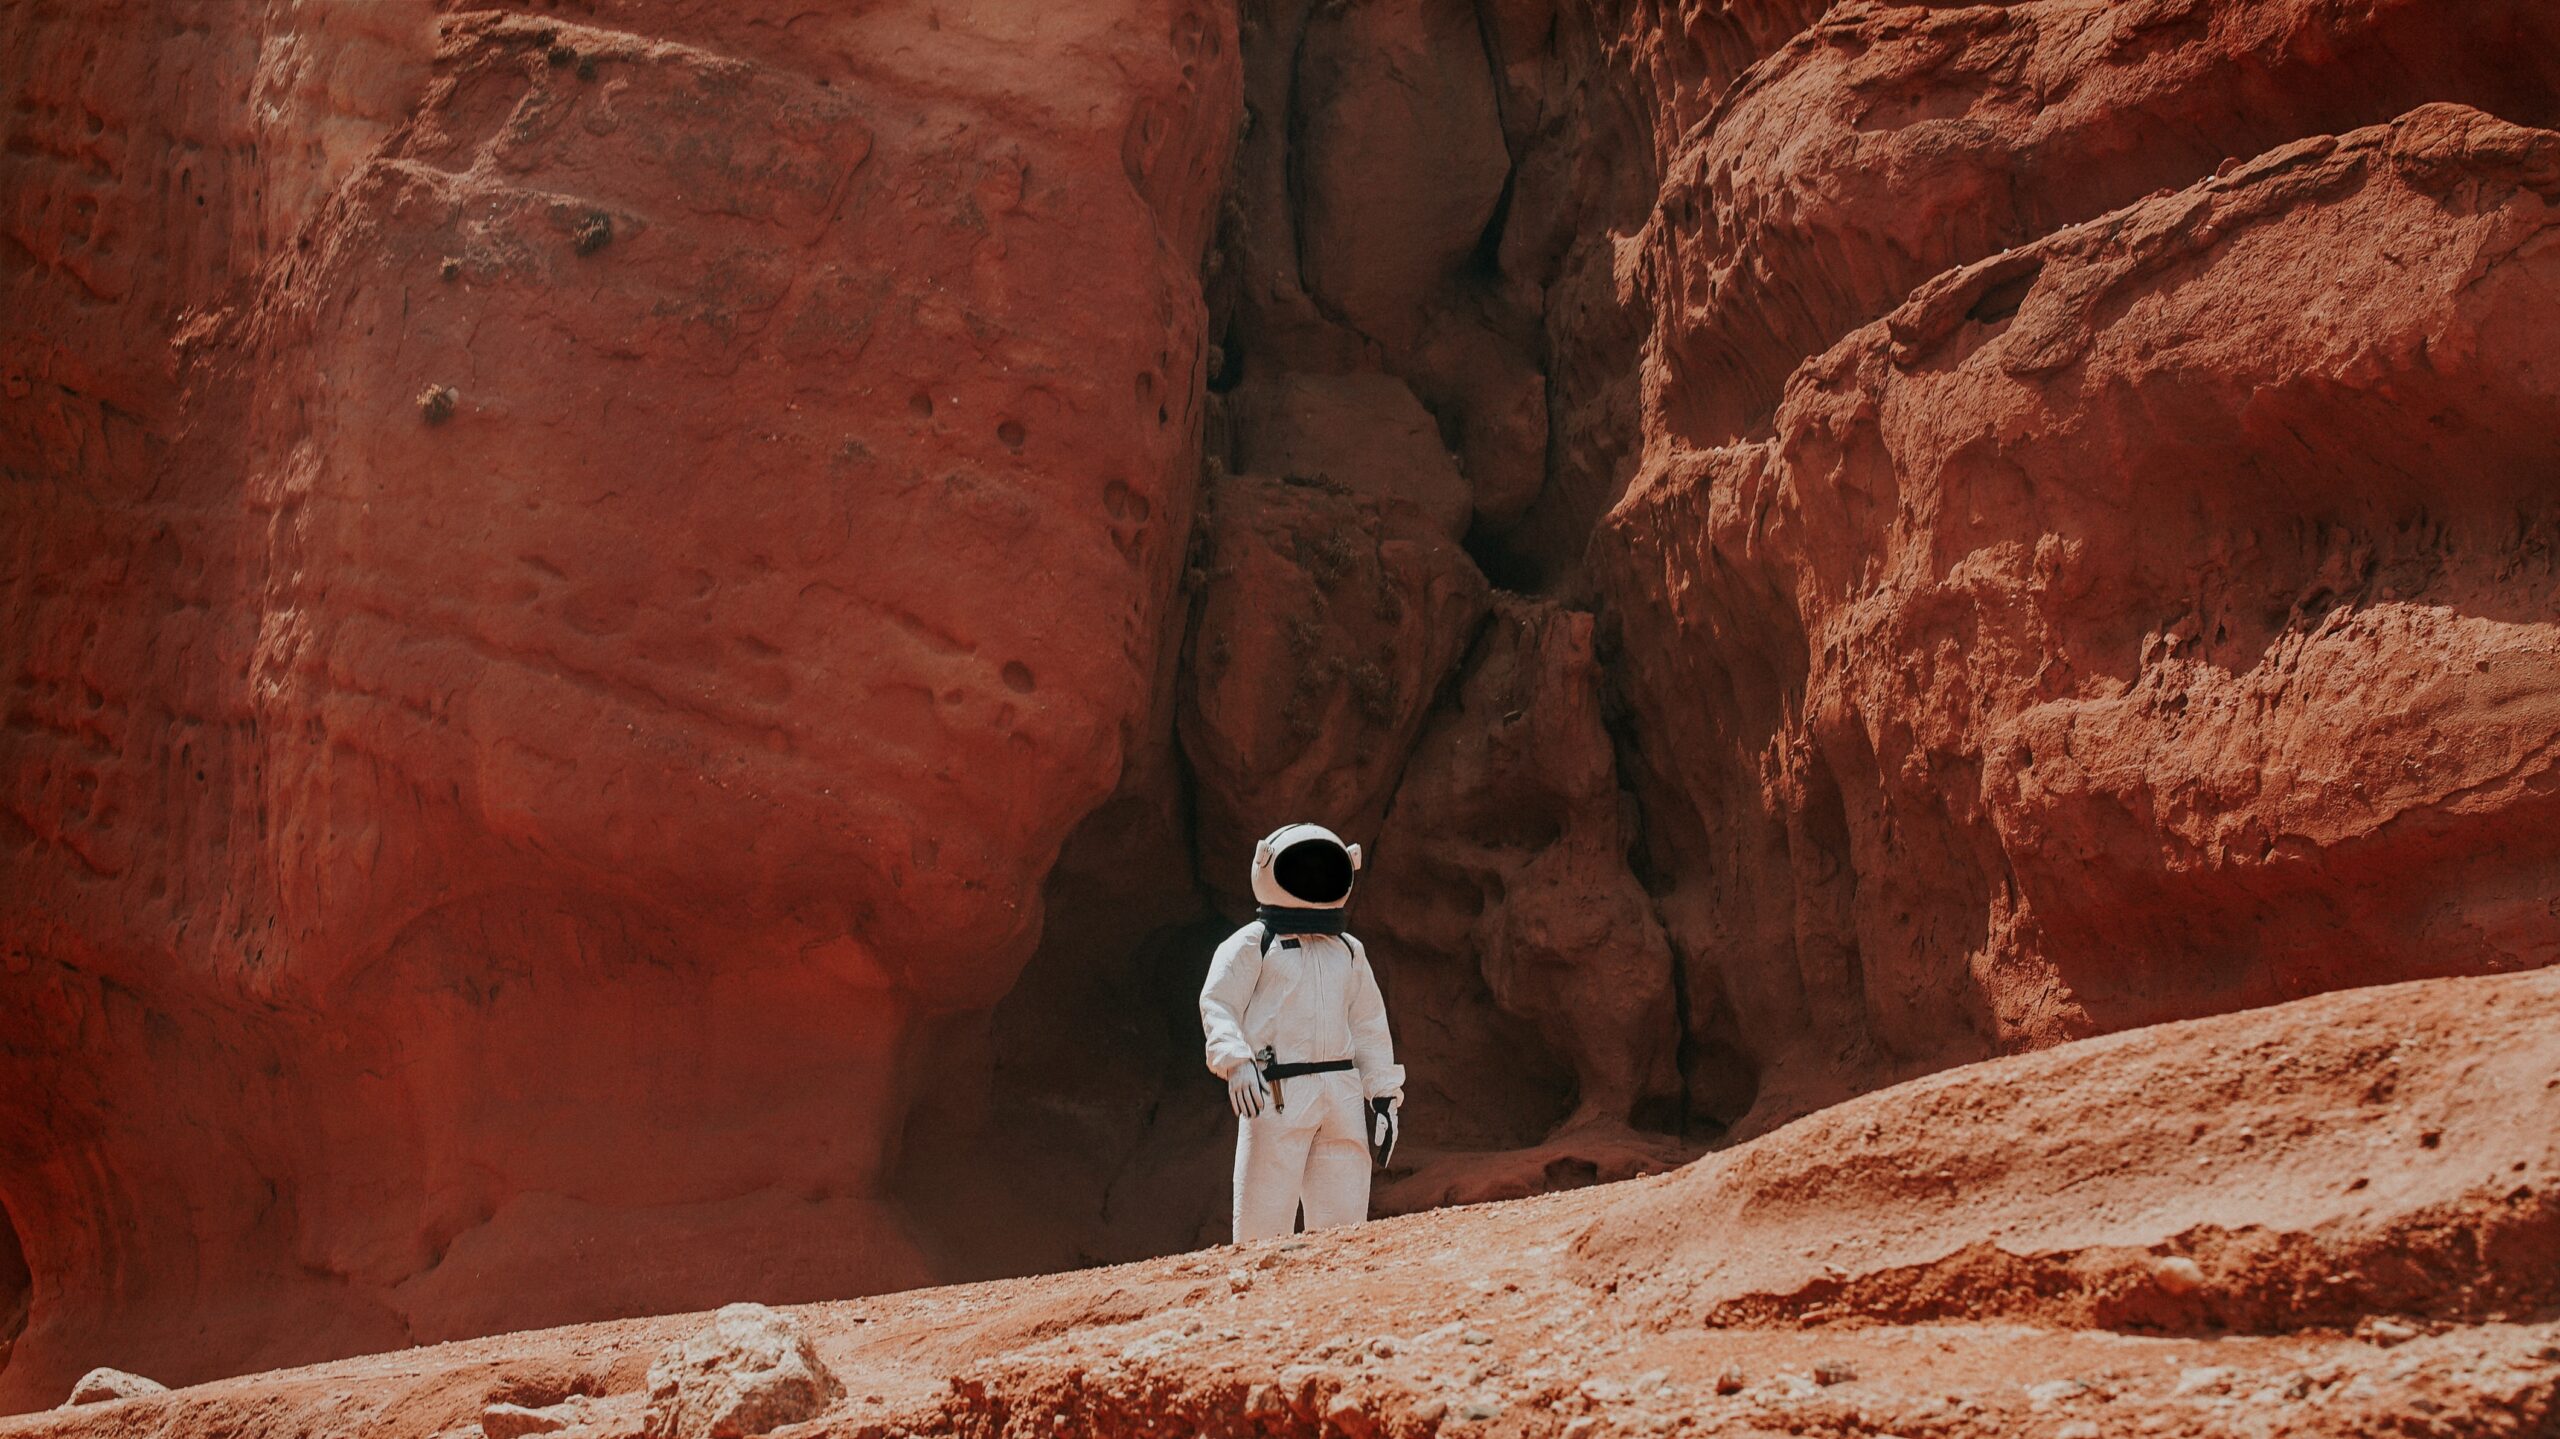 UAE Mars Mission